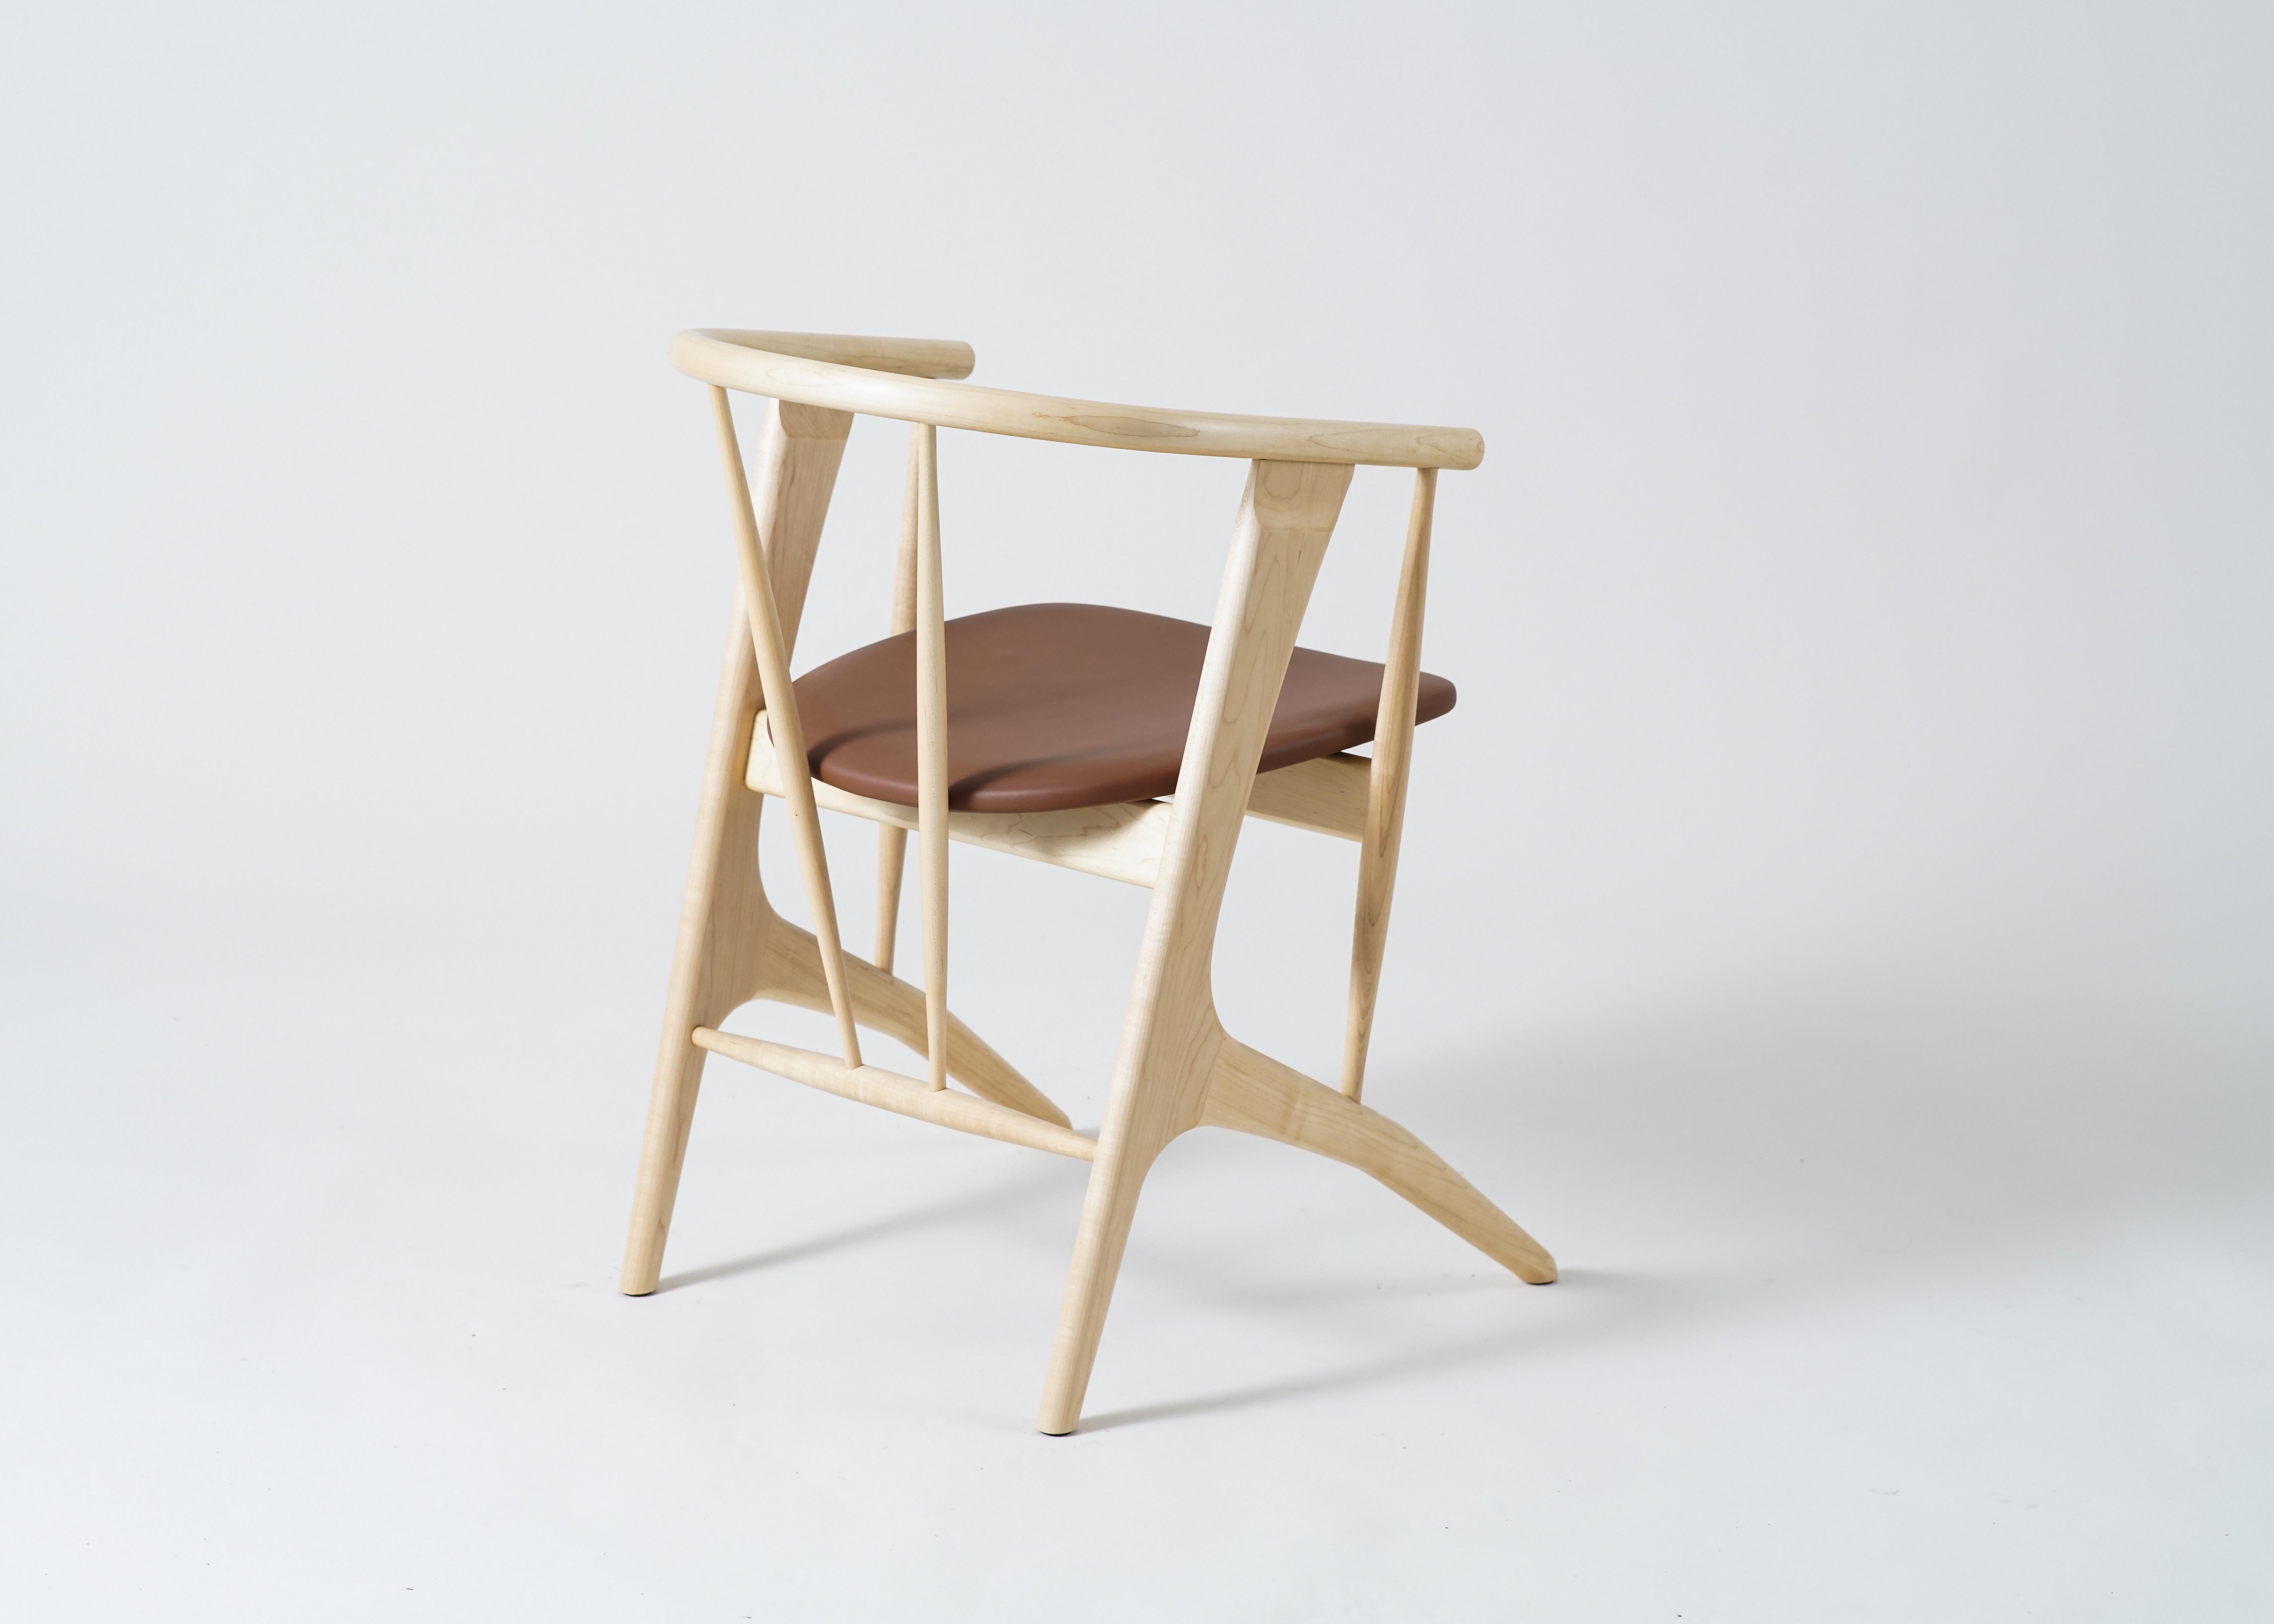 Der Phloem Studio Zoe Stuhl ist ein moderner, zeitgenössischer Sessel aus Massivholz, der auf Bestellung handgefertigt wird.
Zoe ist ein sehr gut verarbeiteter, sehr komfortabler, leichter Sessel, der für lange Dinnerpartys oder einen späten